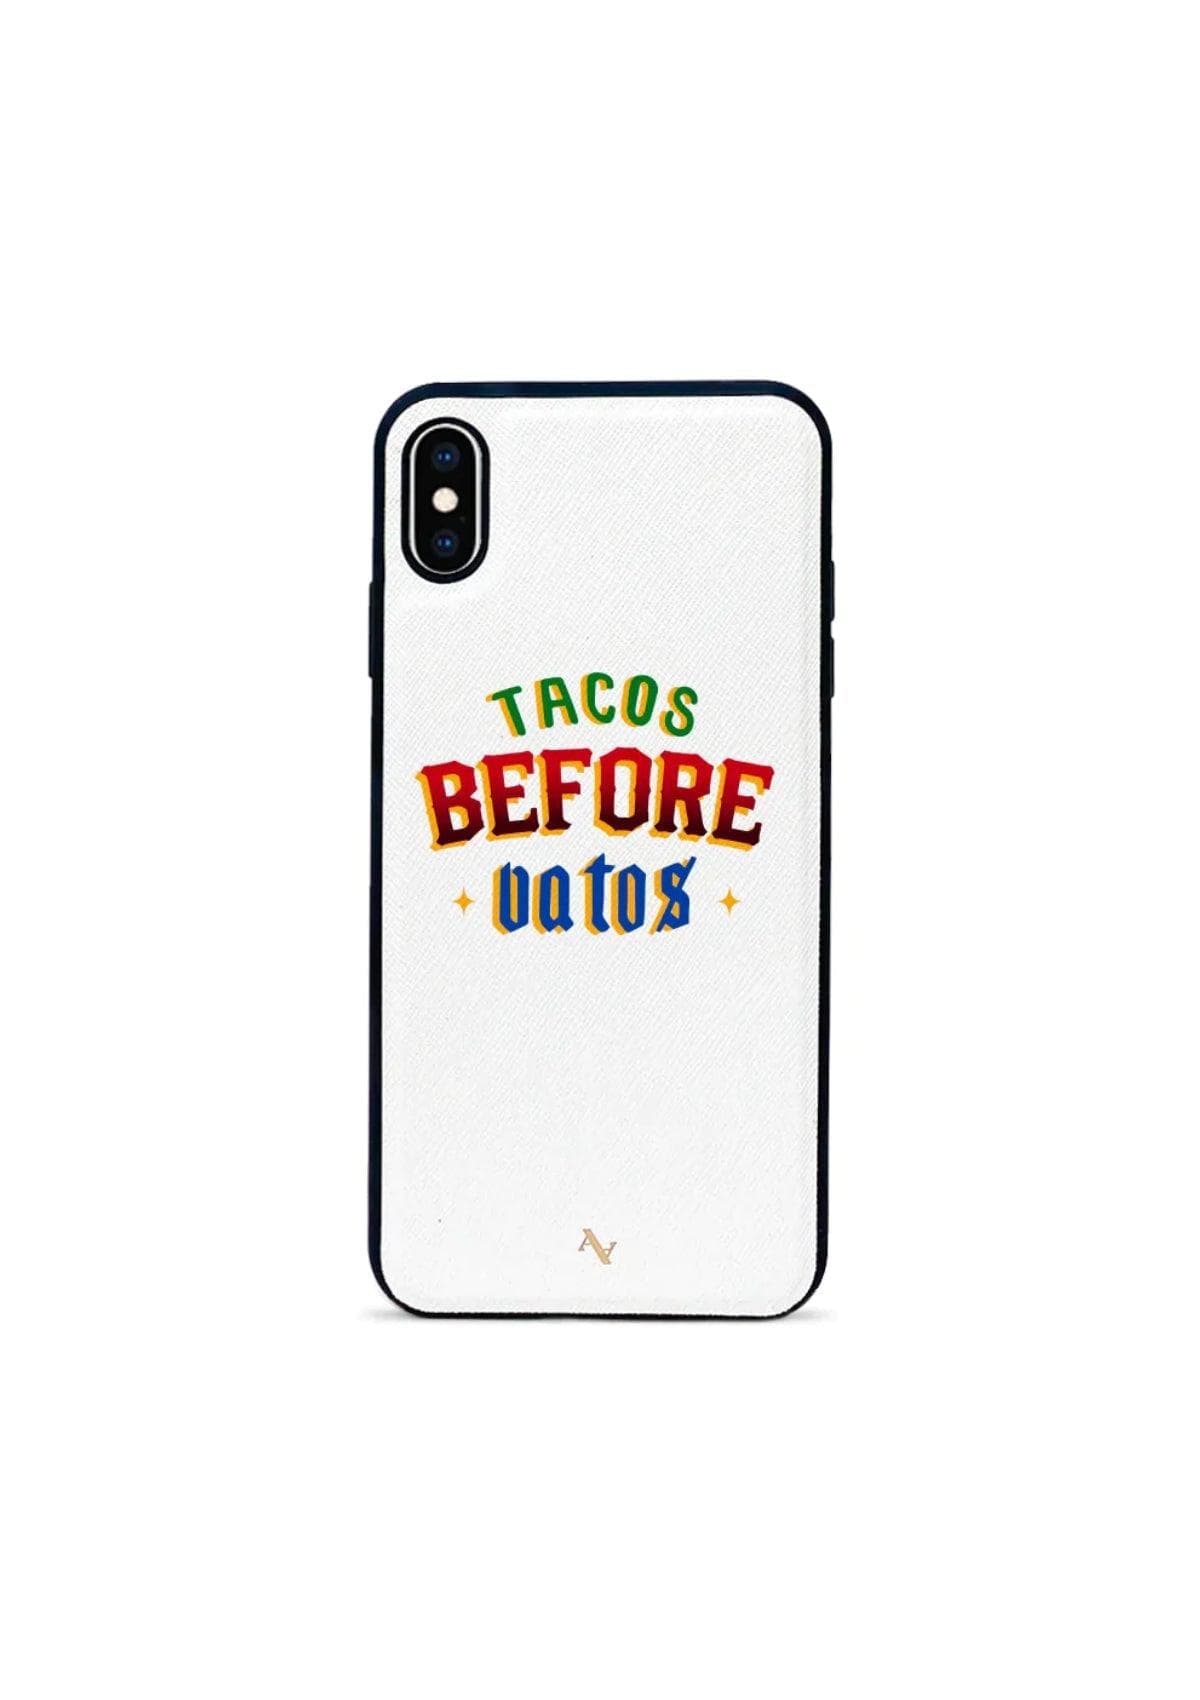 Tacos Before Vatos Phone Case - XS Max